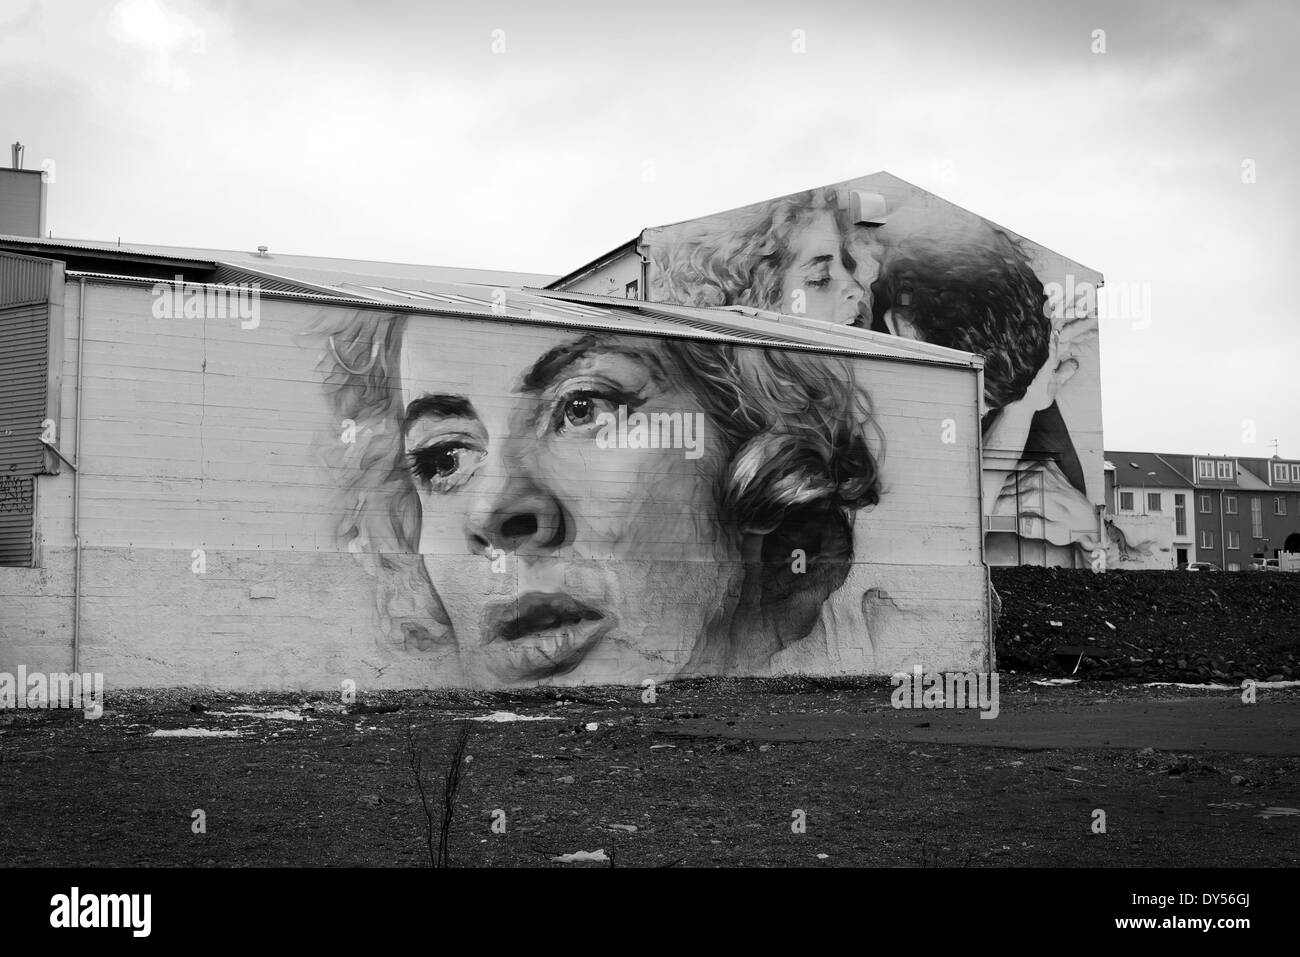 L'art de mur détaillées sur le côté d'un immeuble à Reykjavik, Islande Banque D'Images